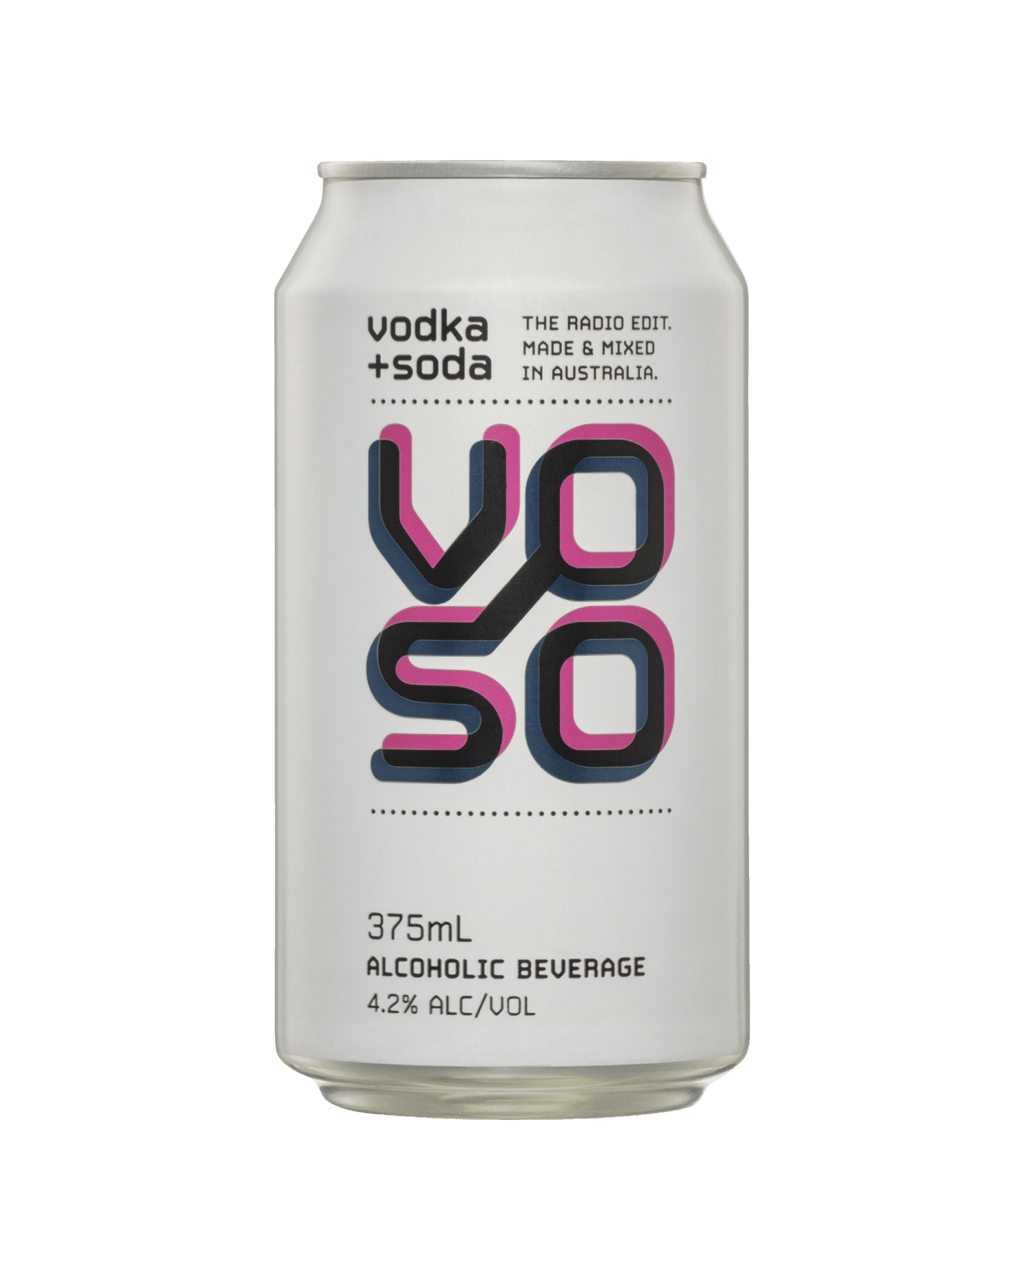 Image - Vodka + Soda by Voso